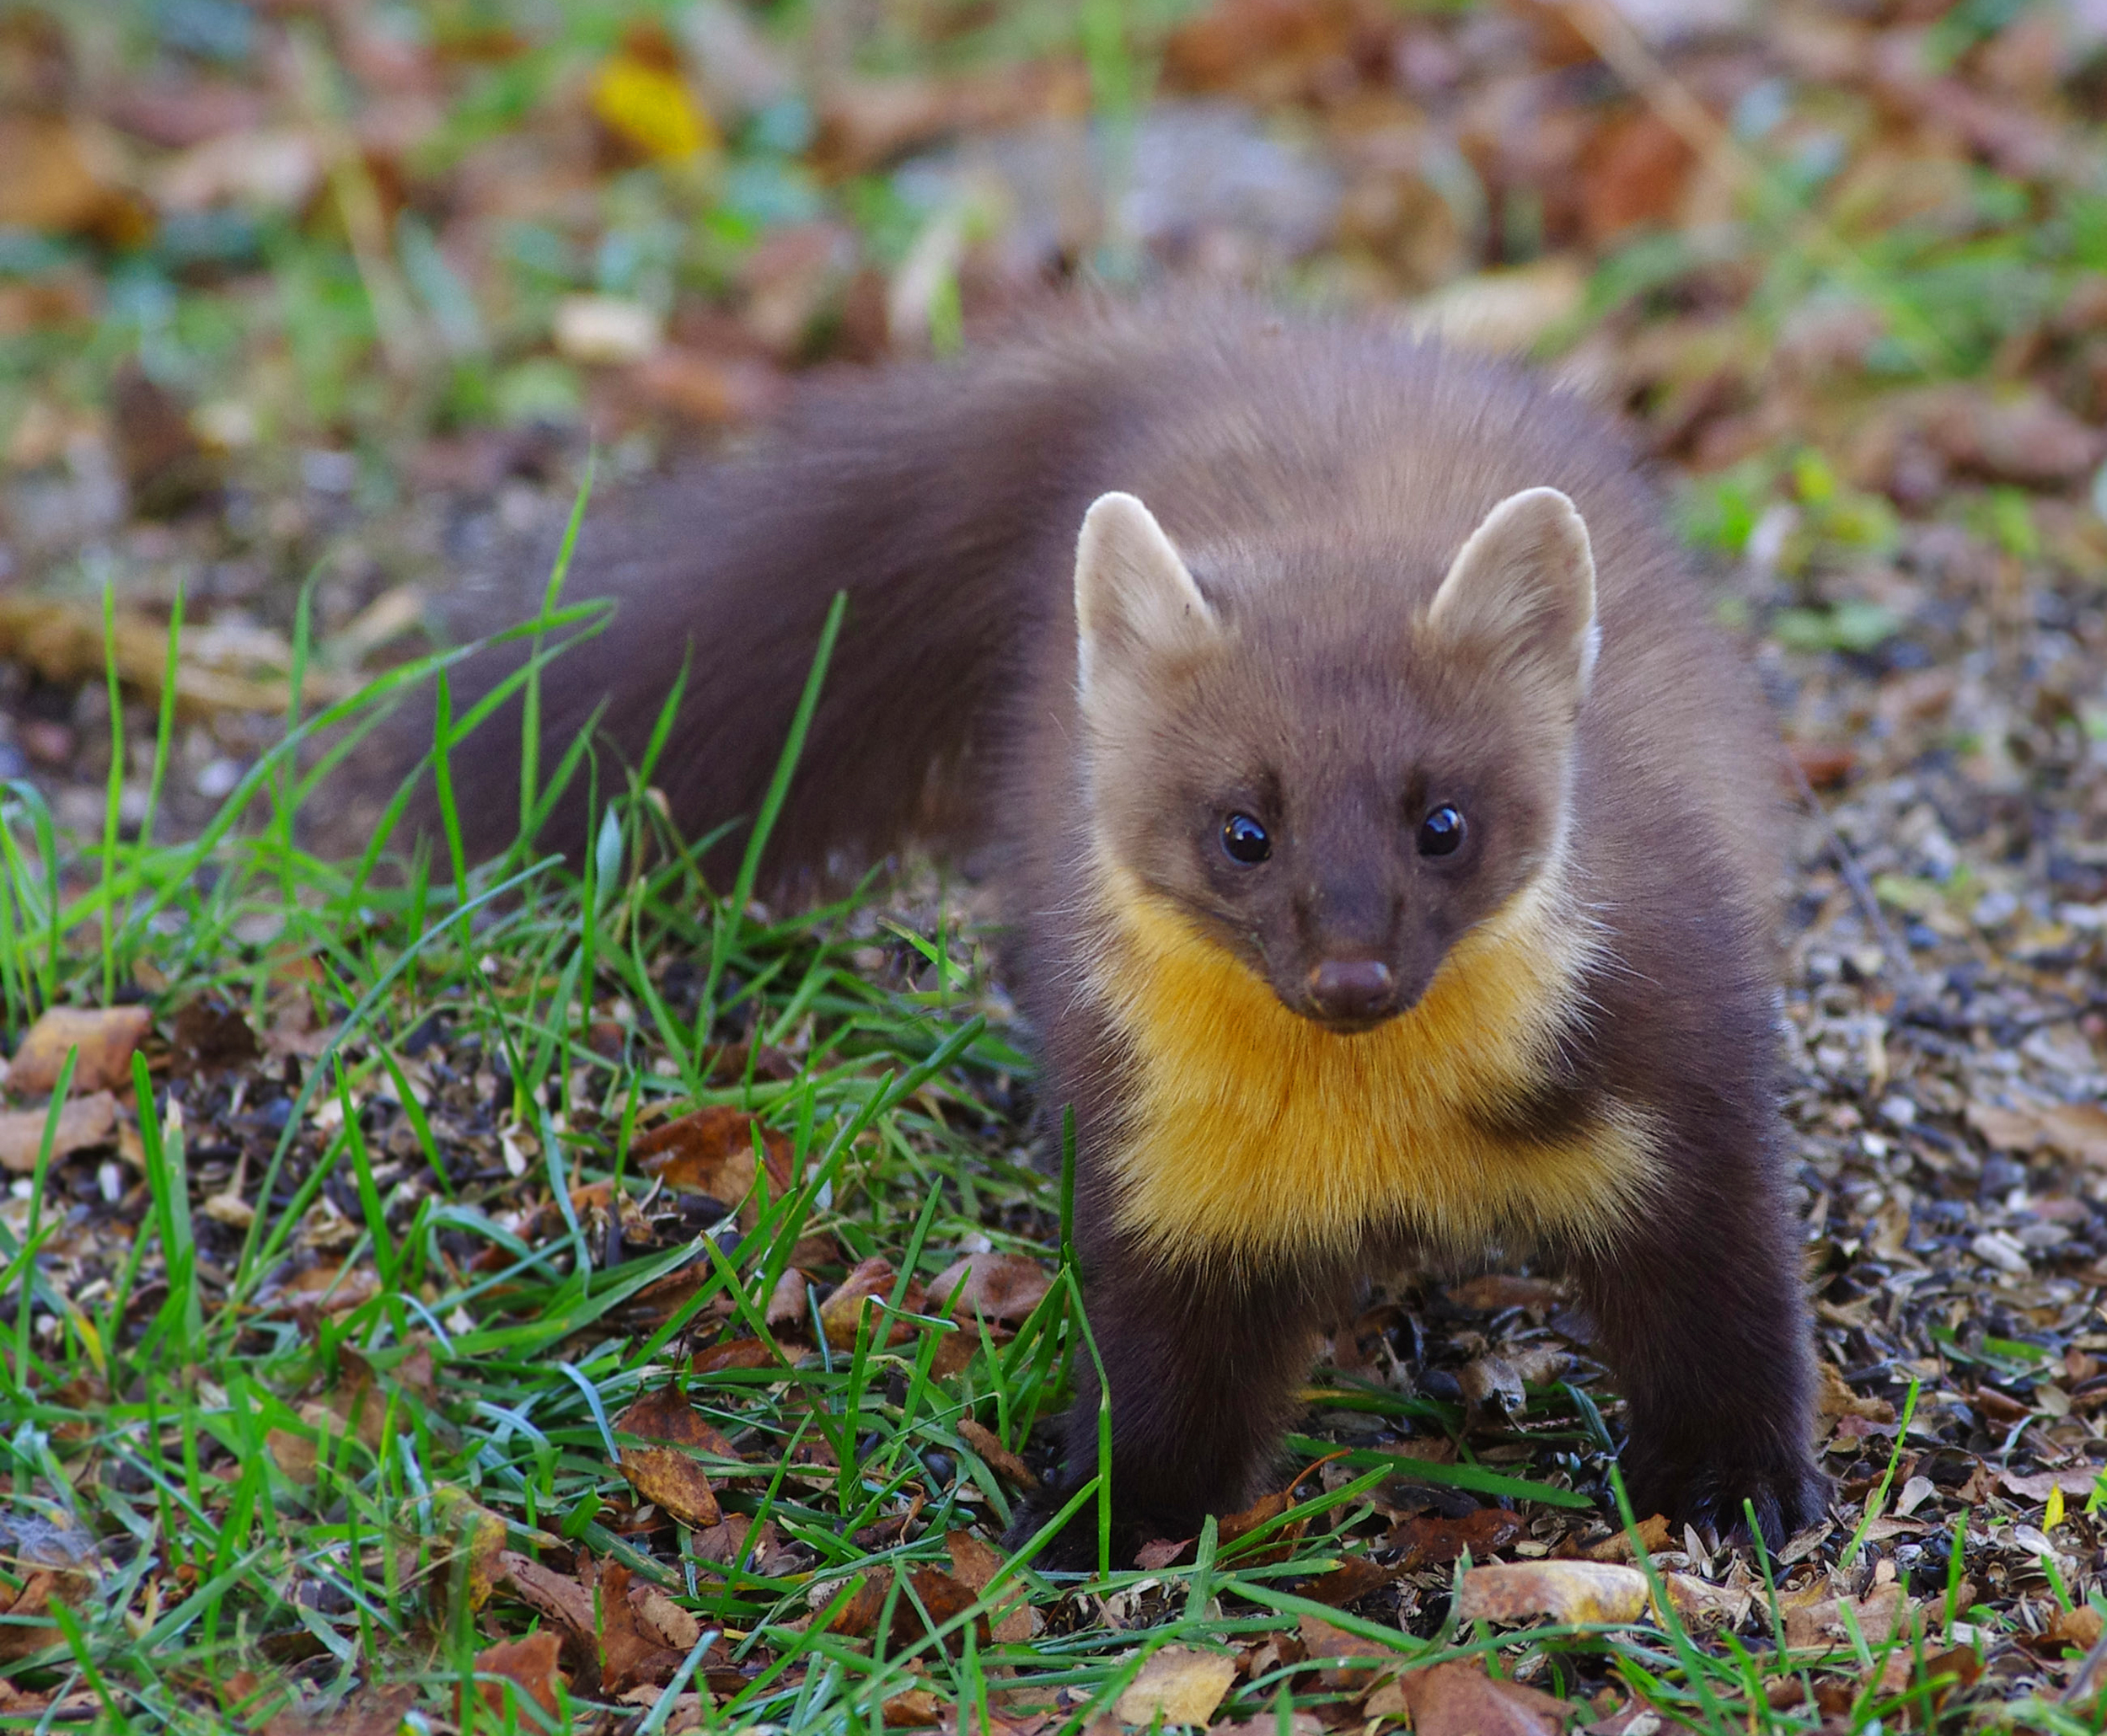 ÖSTERGÖTLAND: Mindre rovdjur i Sverige med naturfotografen Hans Ring